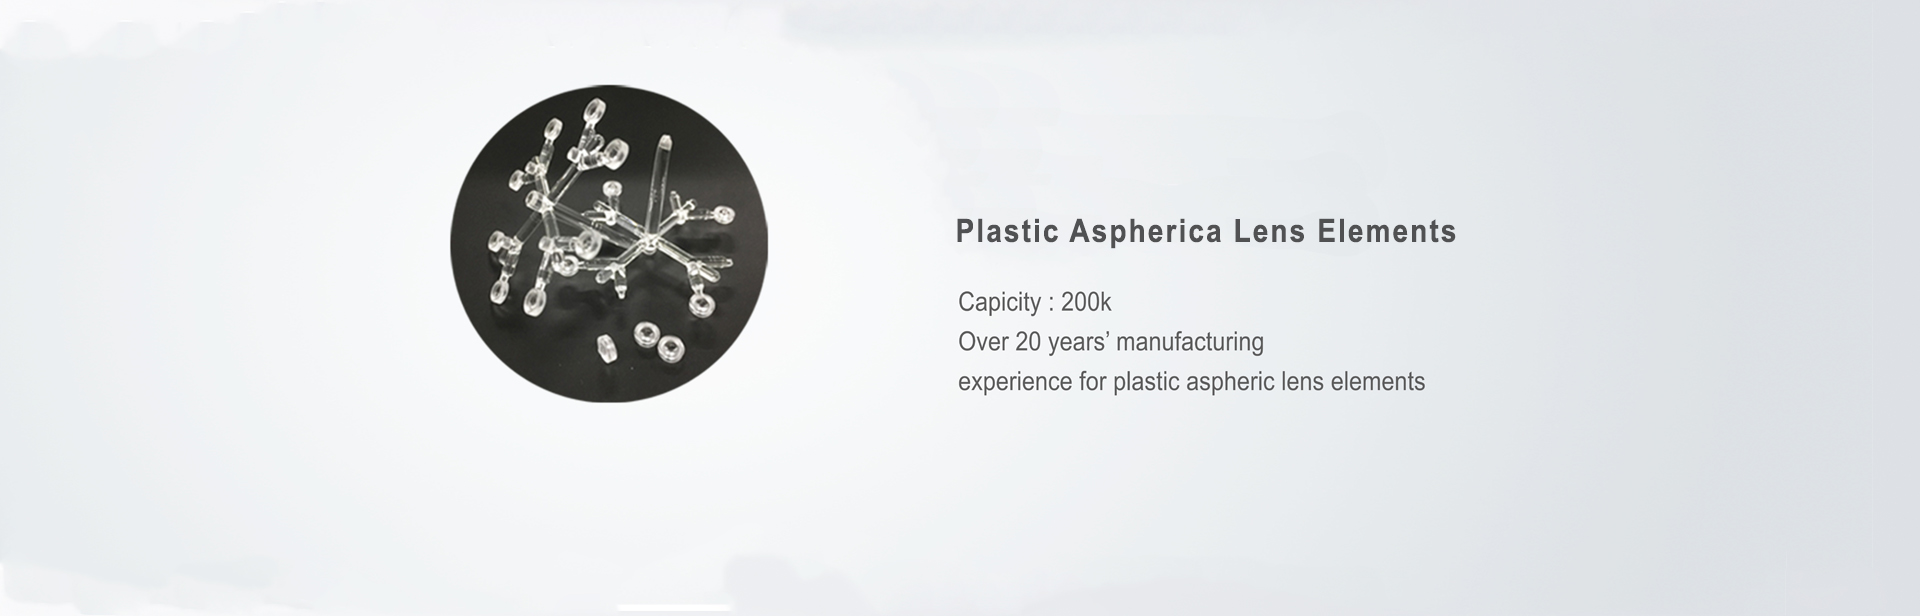 Plastic Aspheric Lens Elements